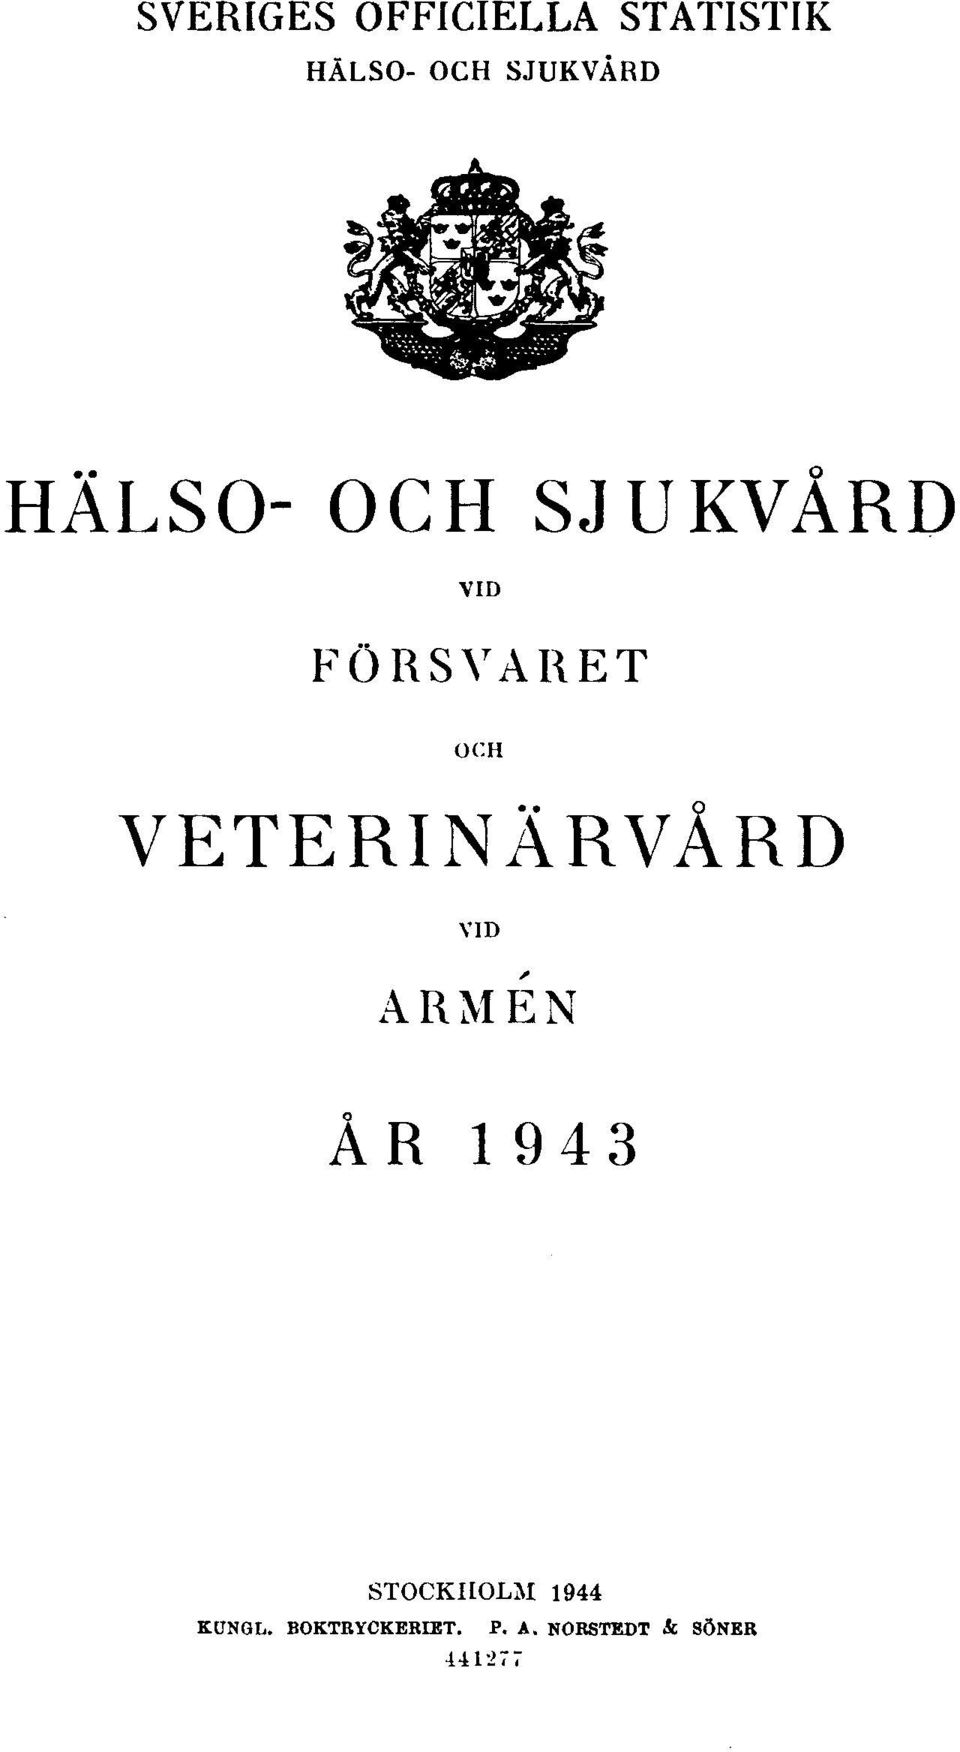 VETERINÄRVÅRD VID ARMÉN ÅR 1943 STOCKHOLM 1944